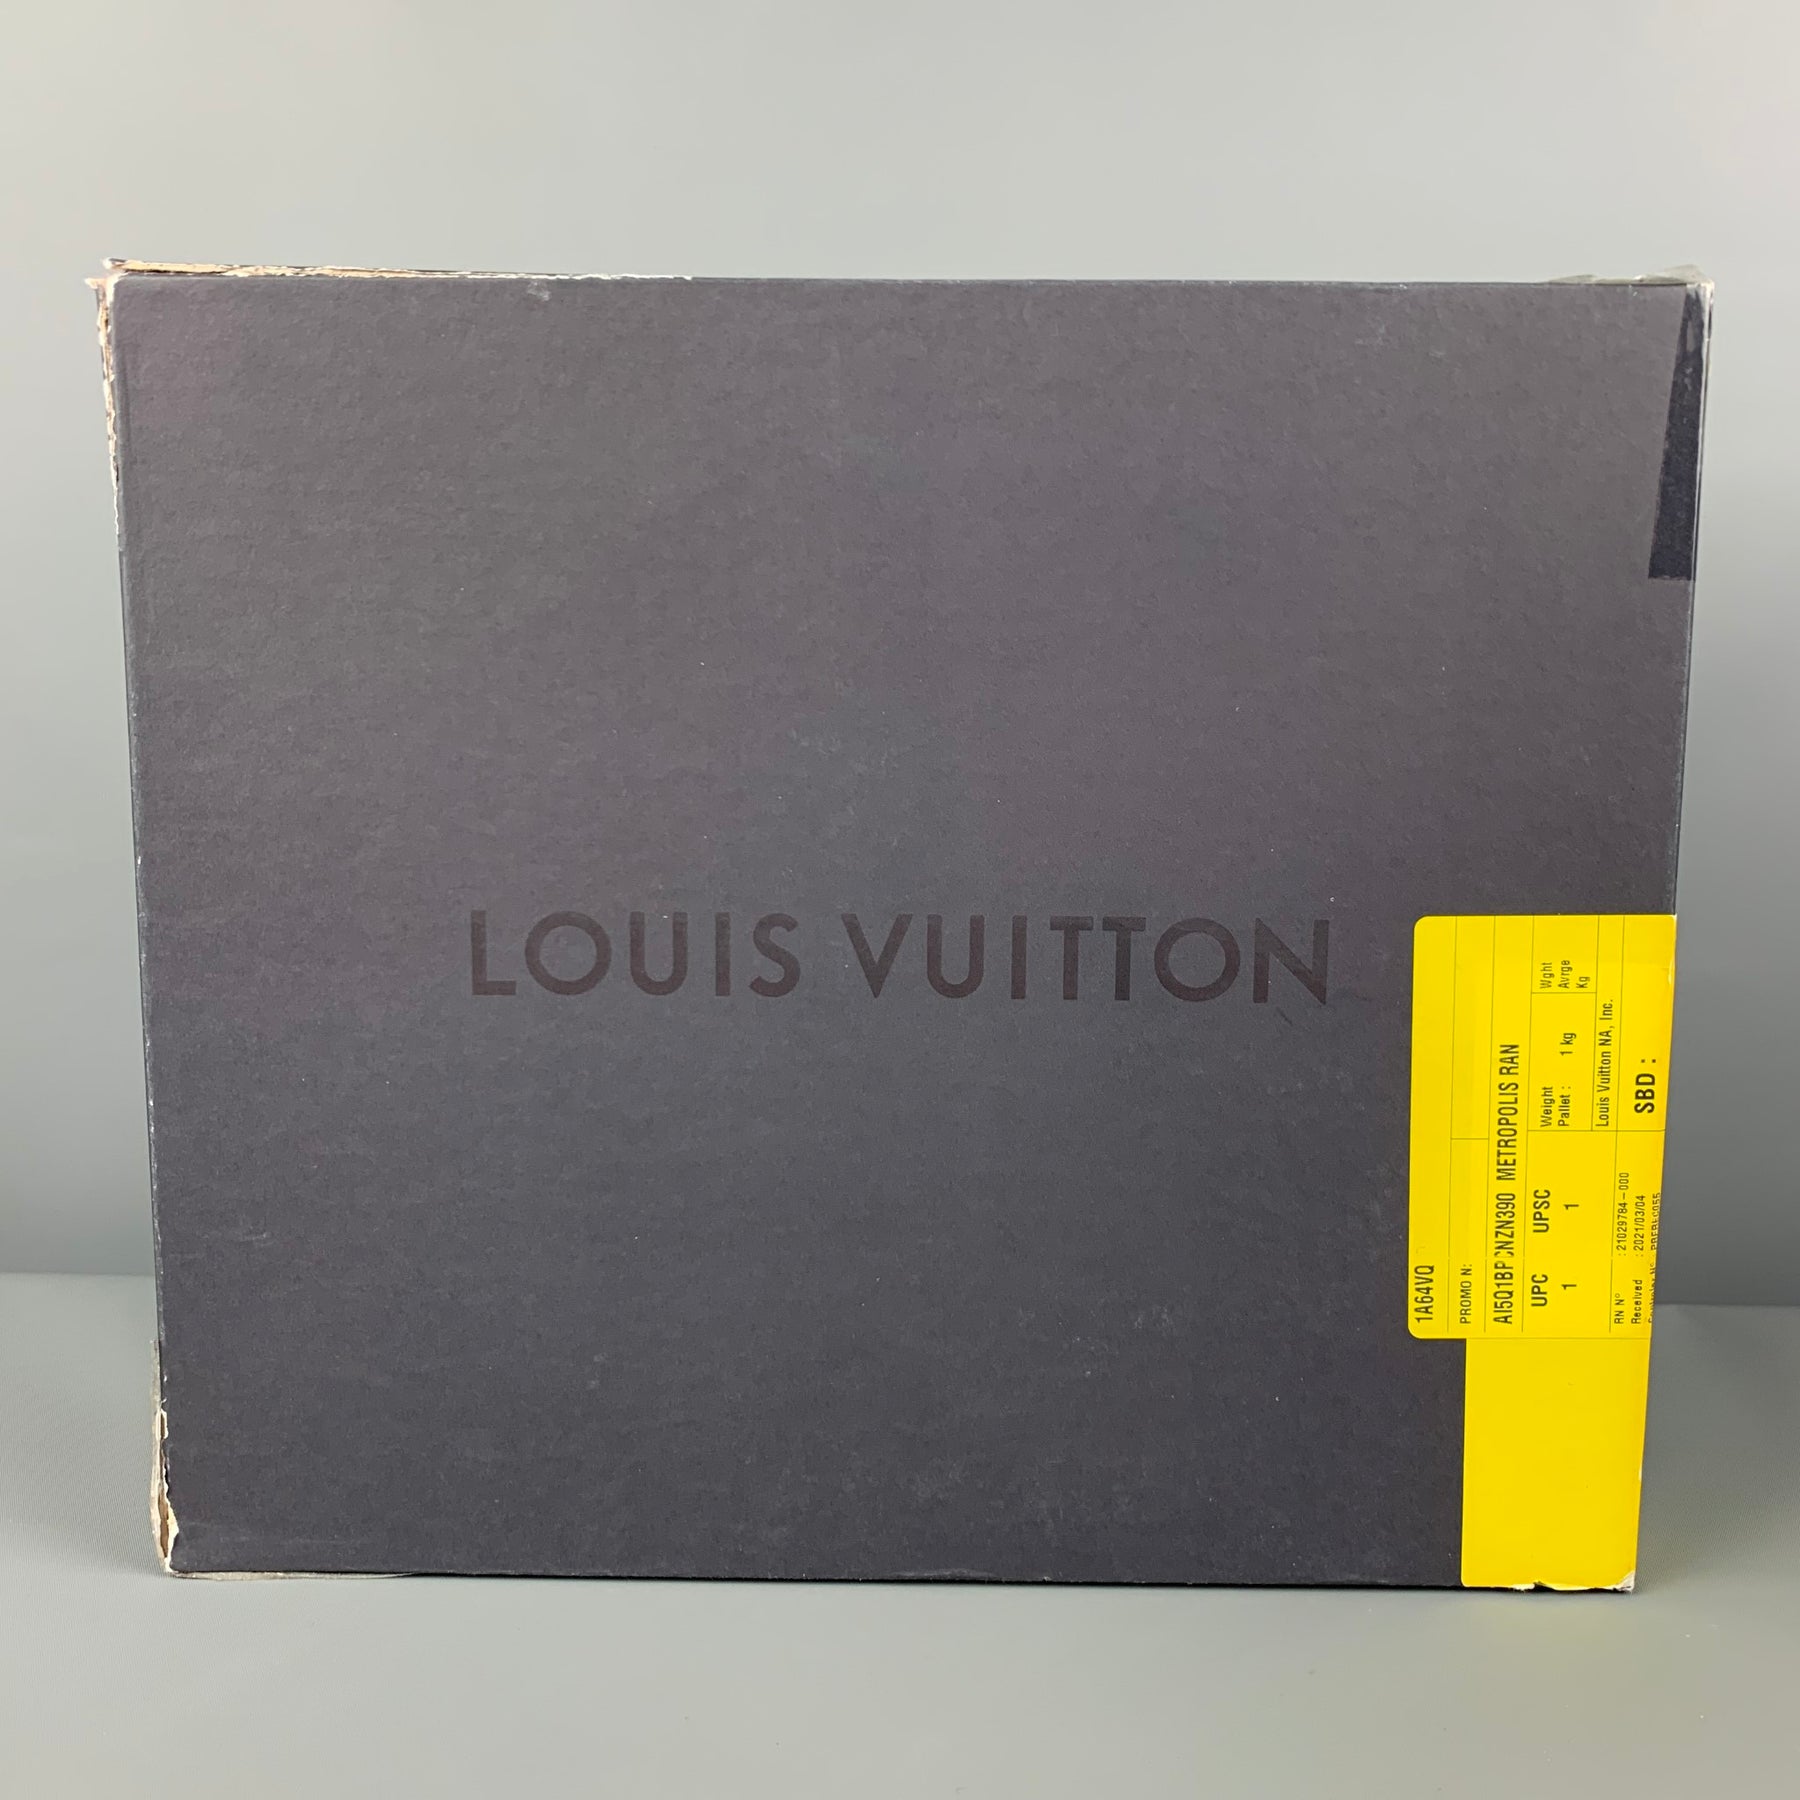 Louis Vuitton Metropolis Flat Ranger BLACK. Size 35.5